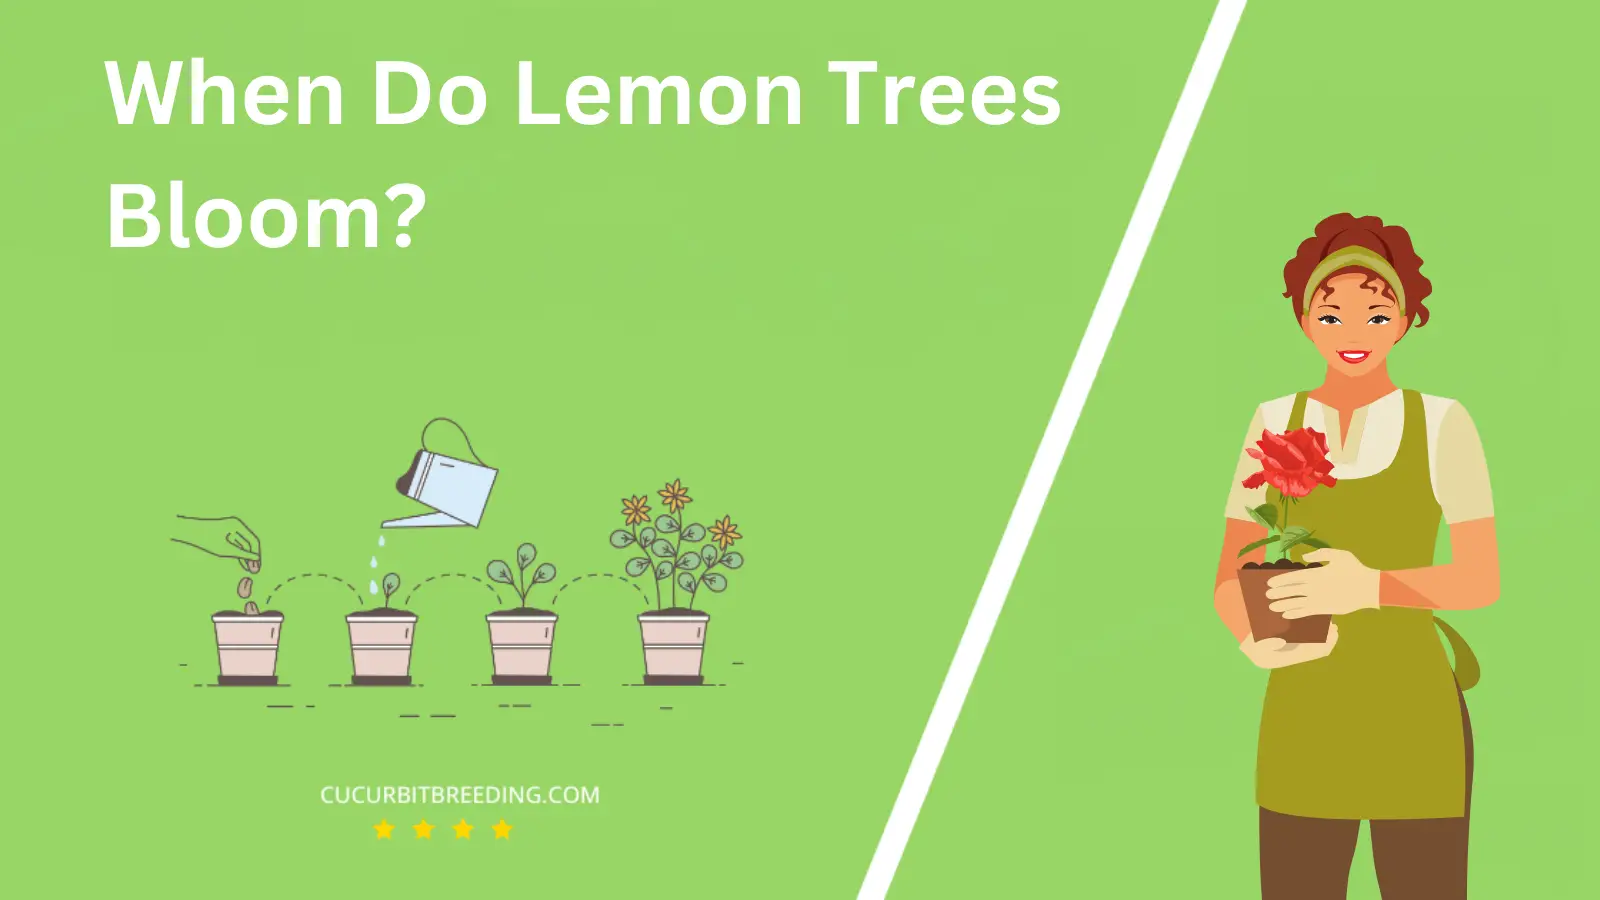 When Do Lemon Trees Bloom?